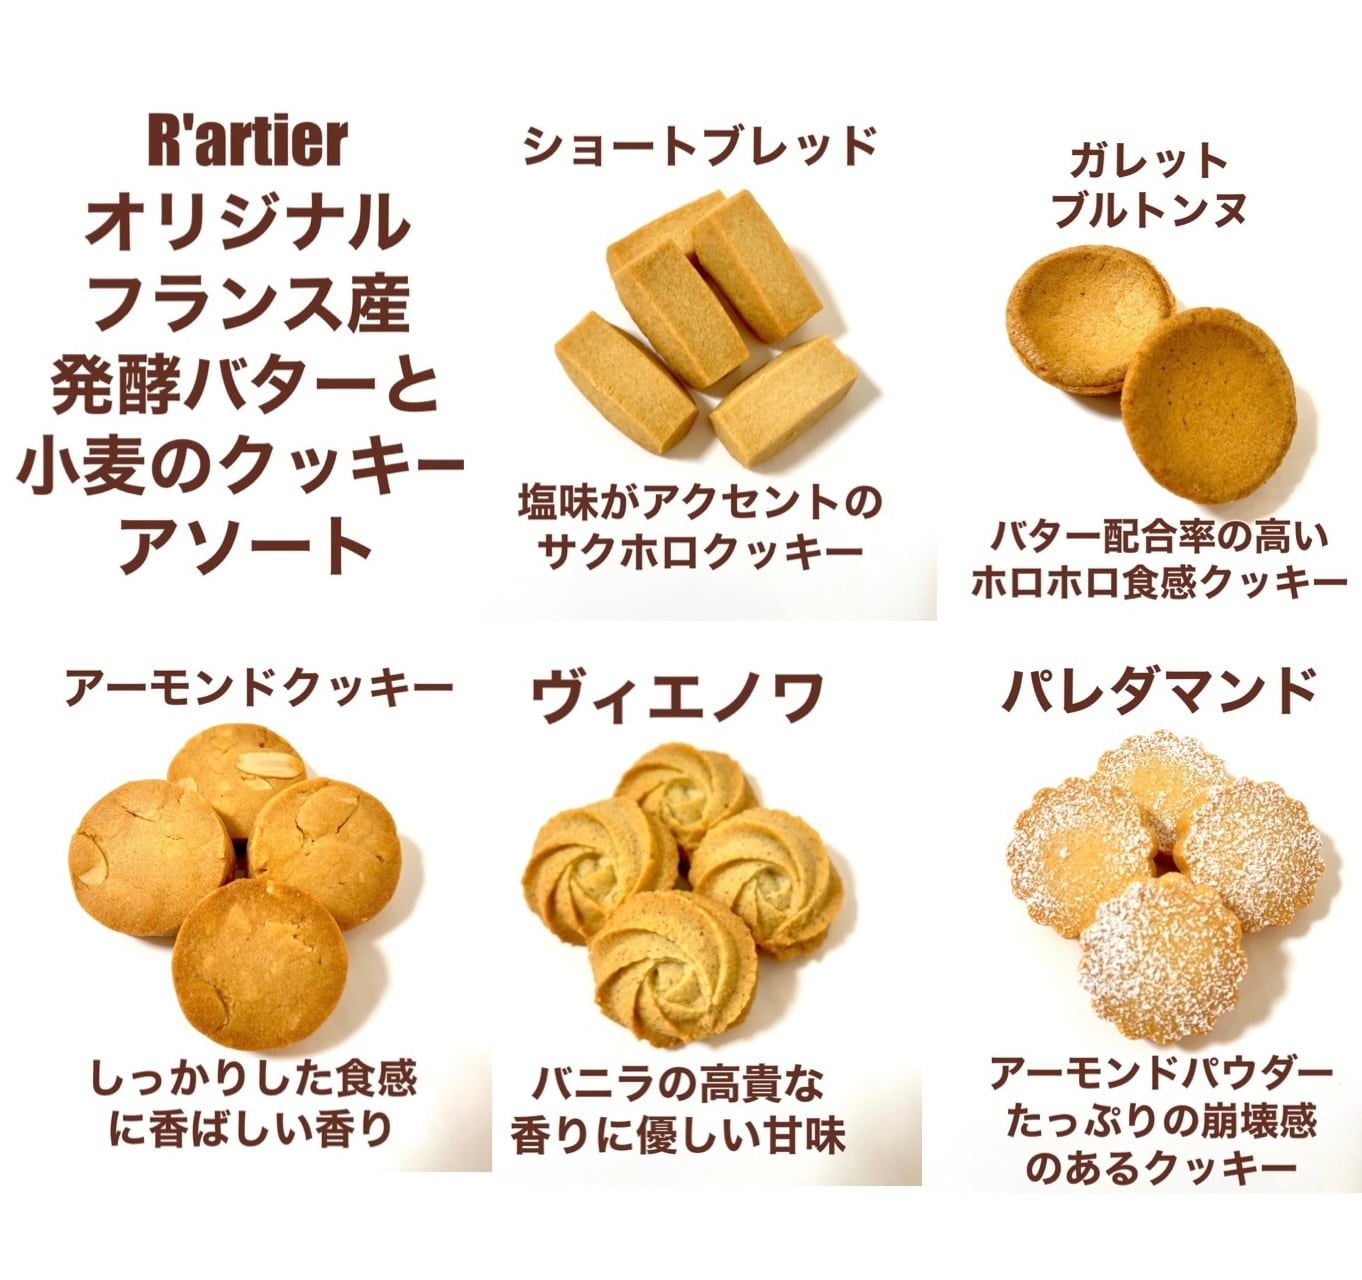 フランス産発酵バターの焼き菓子アソート菓子/デザート - 菓子/デザート